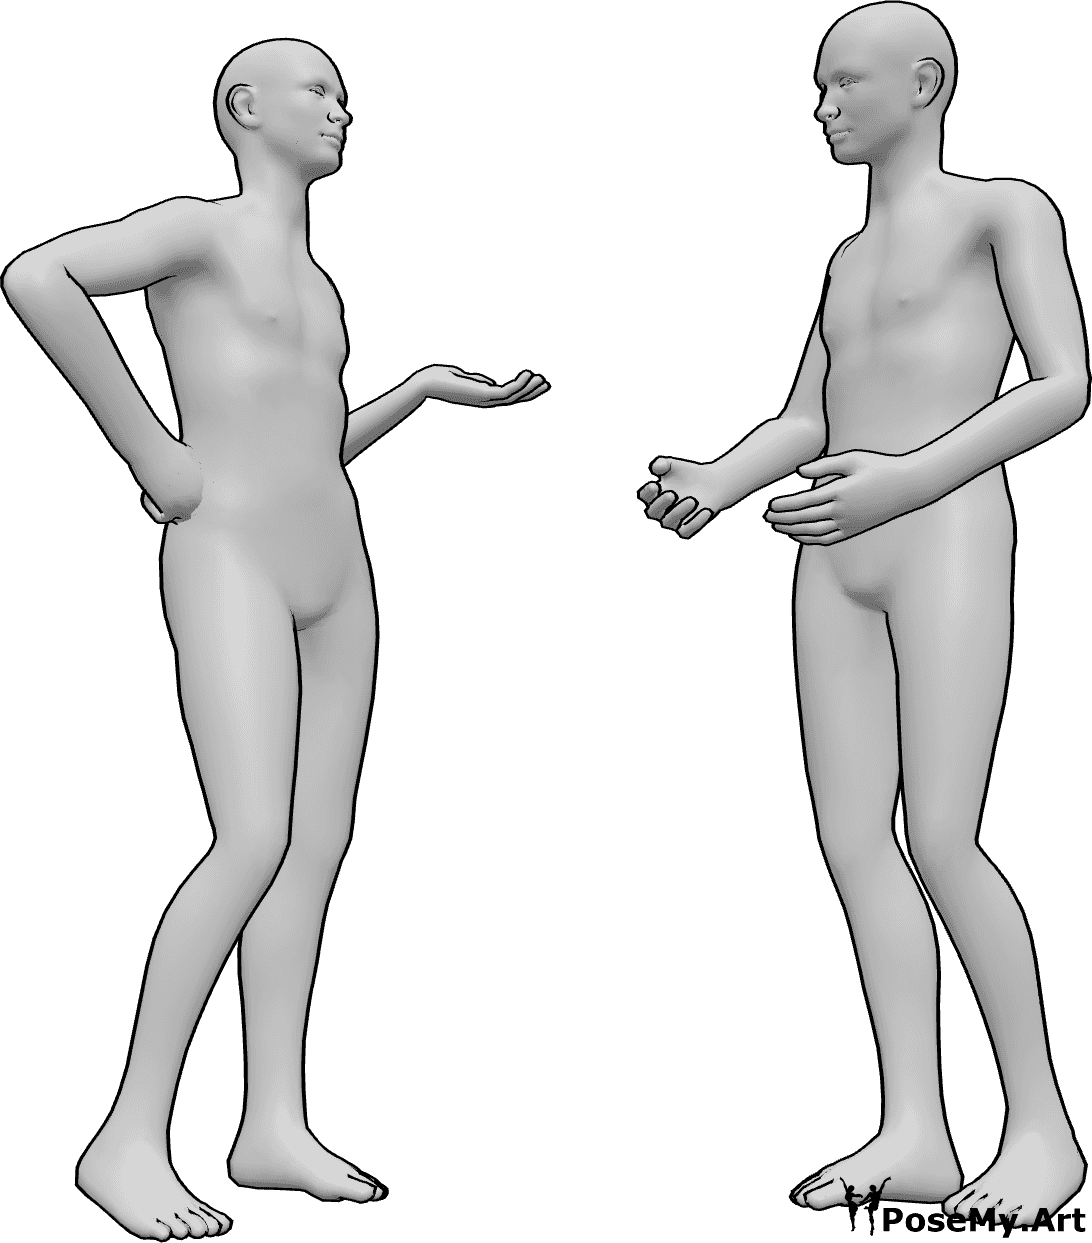 Referência de poses- Homens em pose de conversação - Dois homens estão de pé e a conversar, numa conversa informal